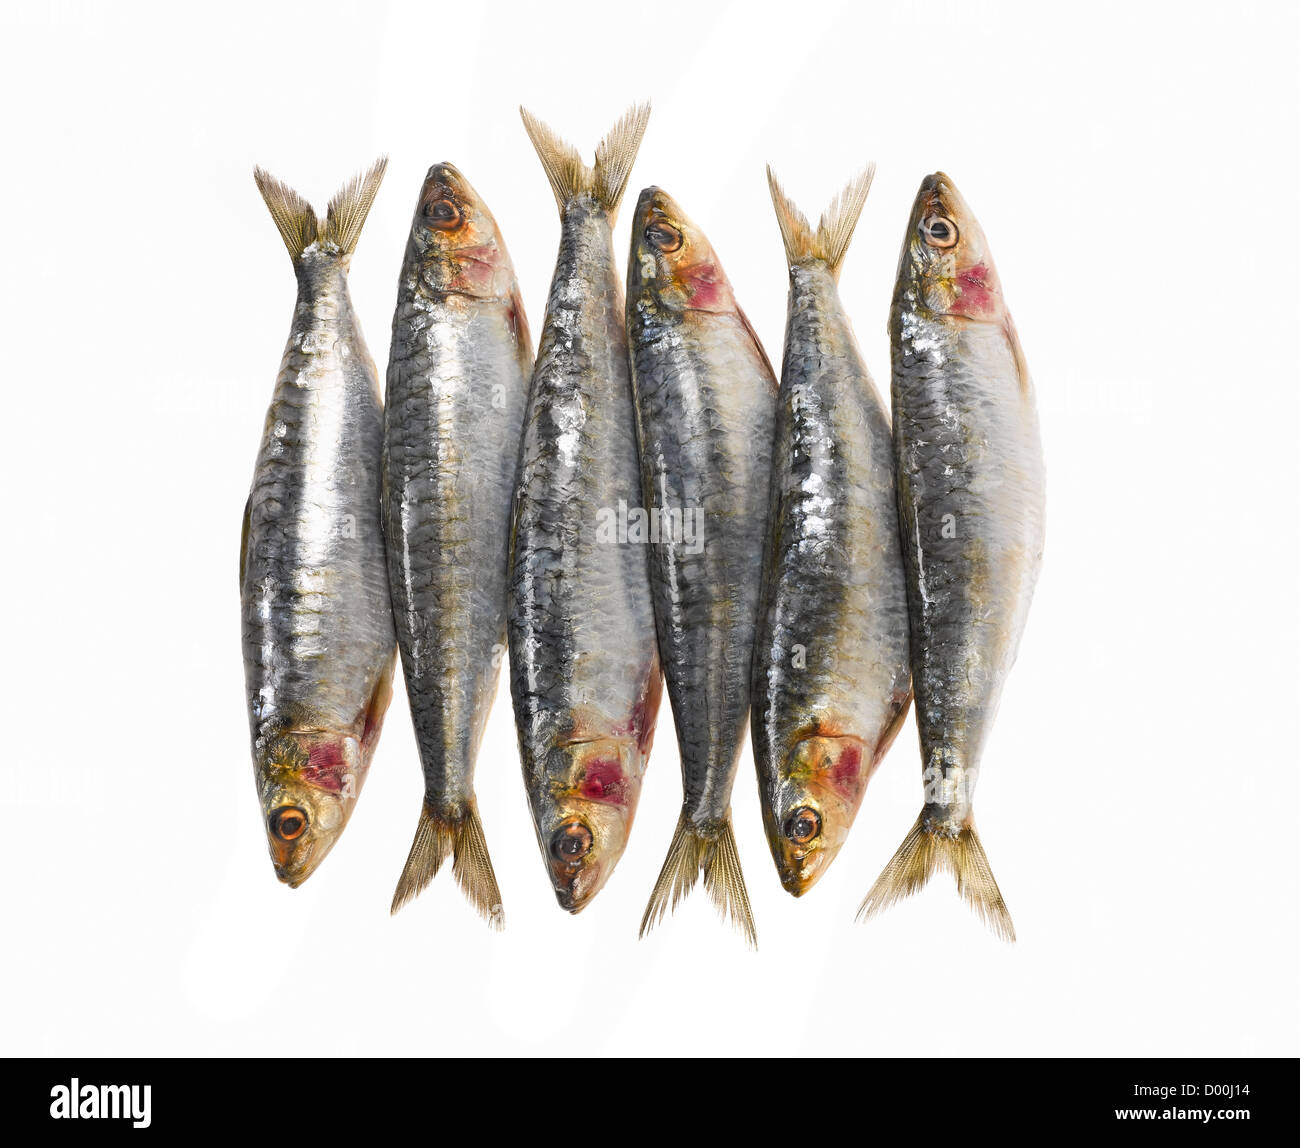 La sardina fresca entera Foto de stock